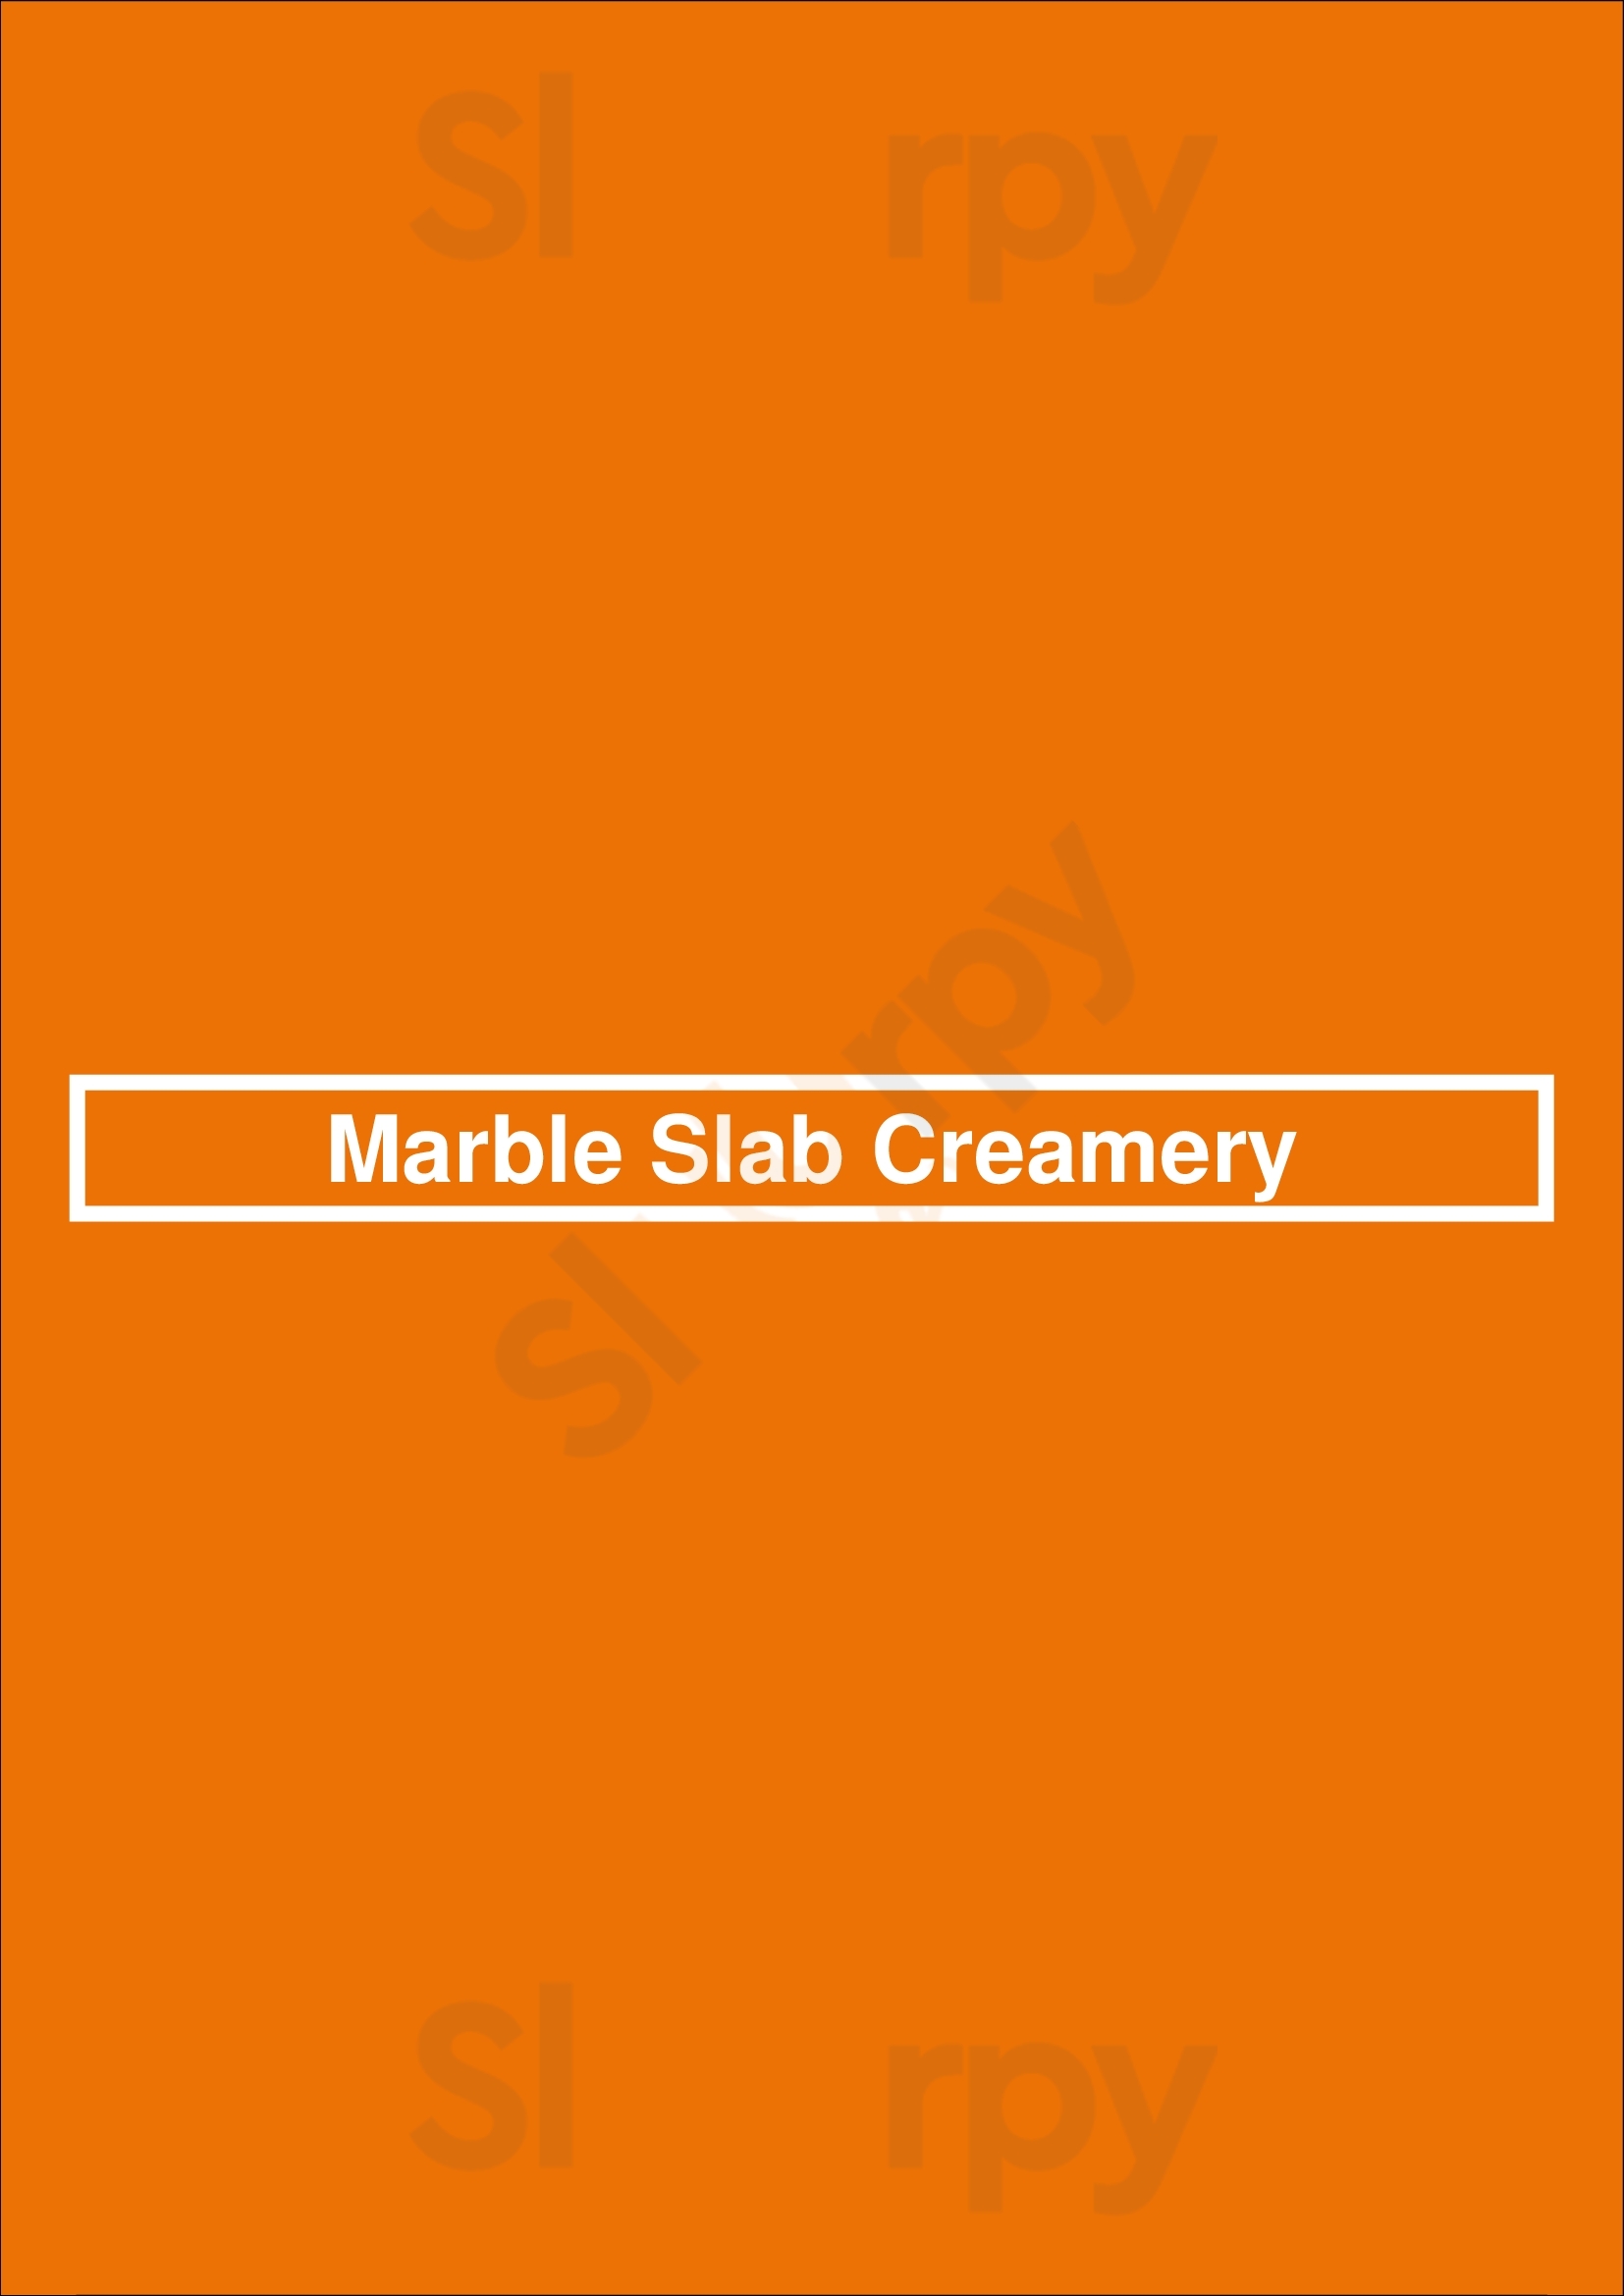 Marble Slab Creamery Saskatoon Menu - 1